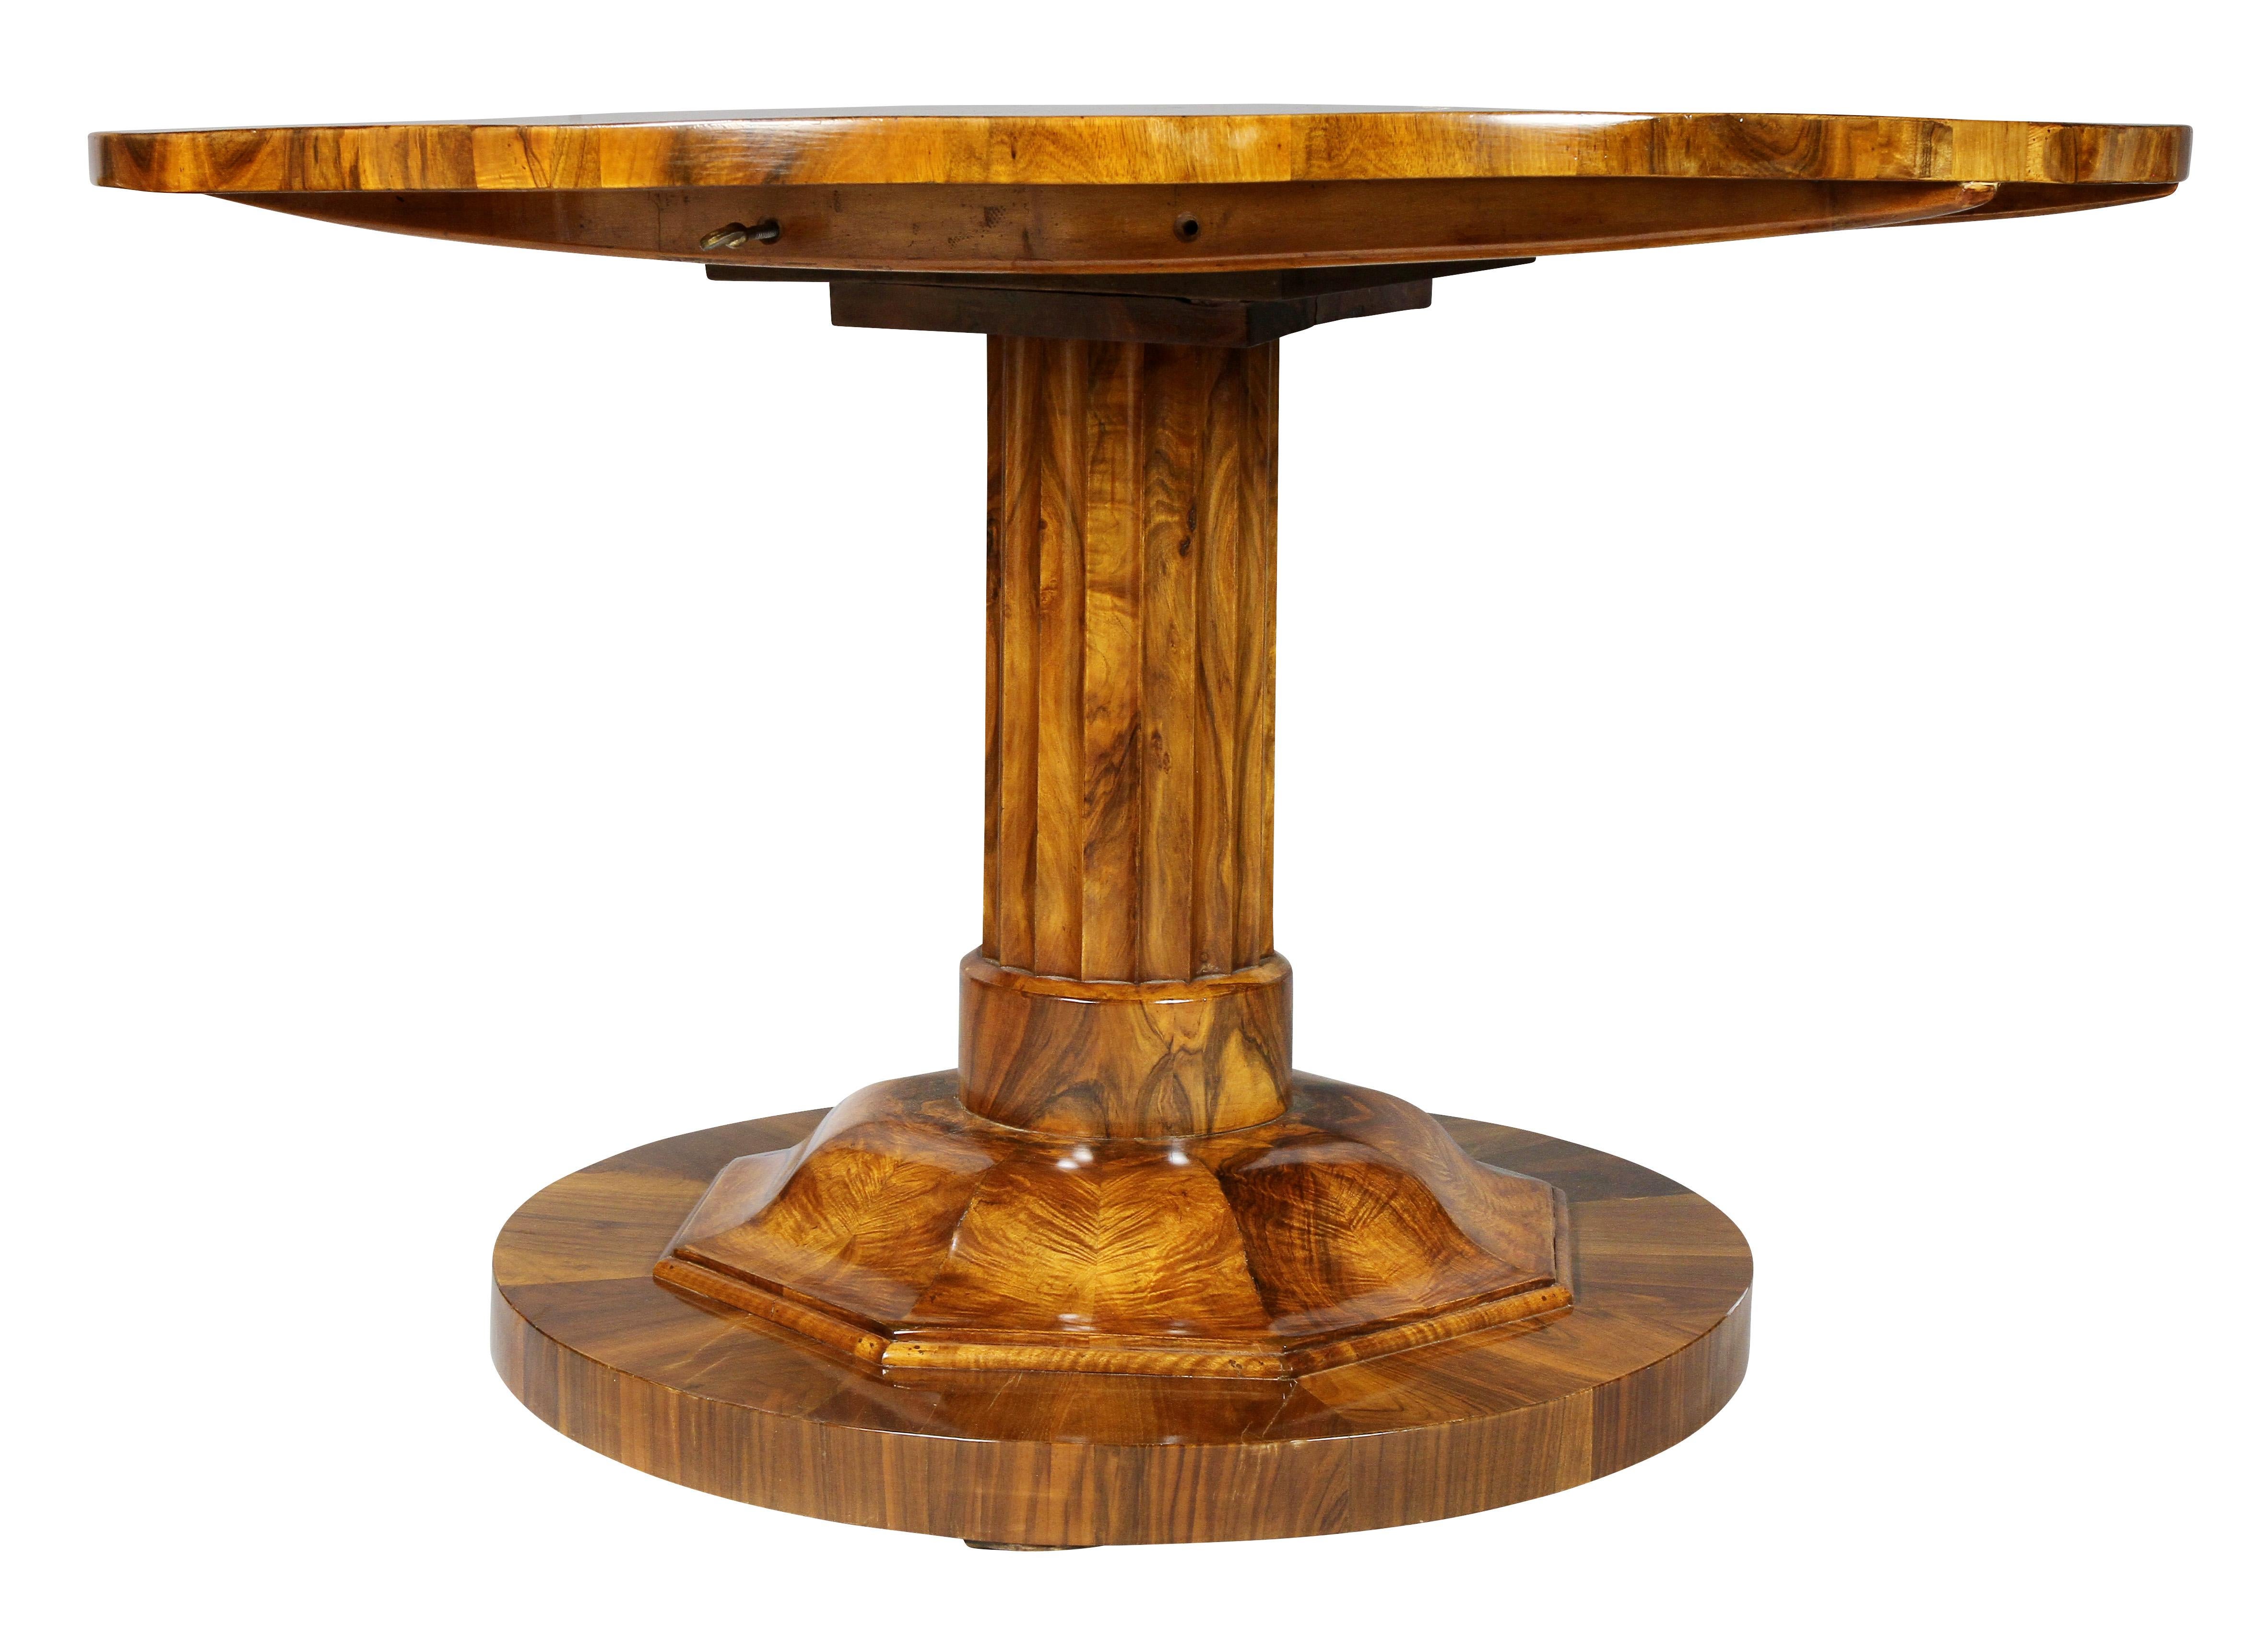 Early 19th Century Biedermeier Figured Walnut Center Table